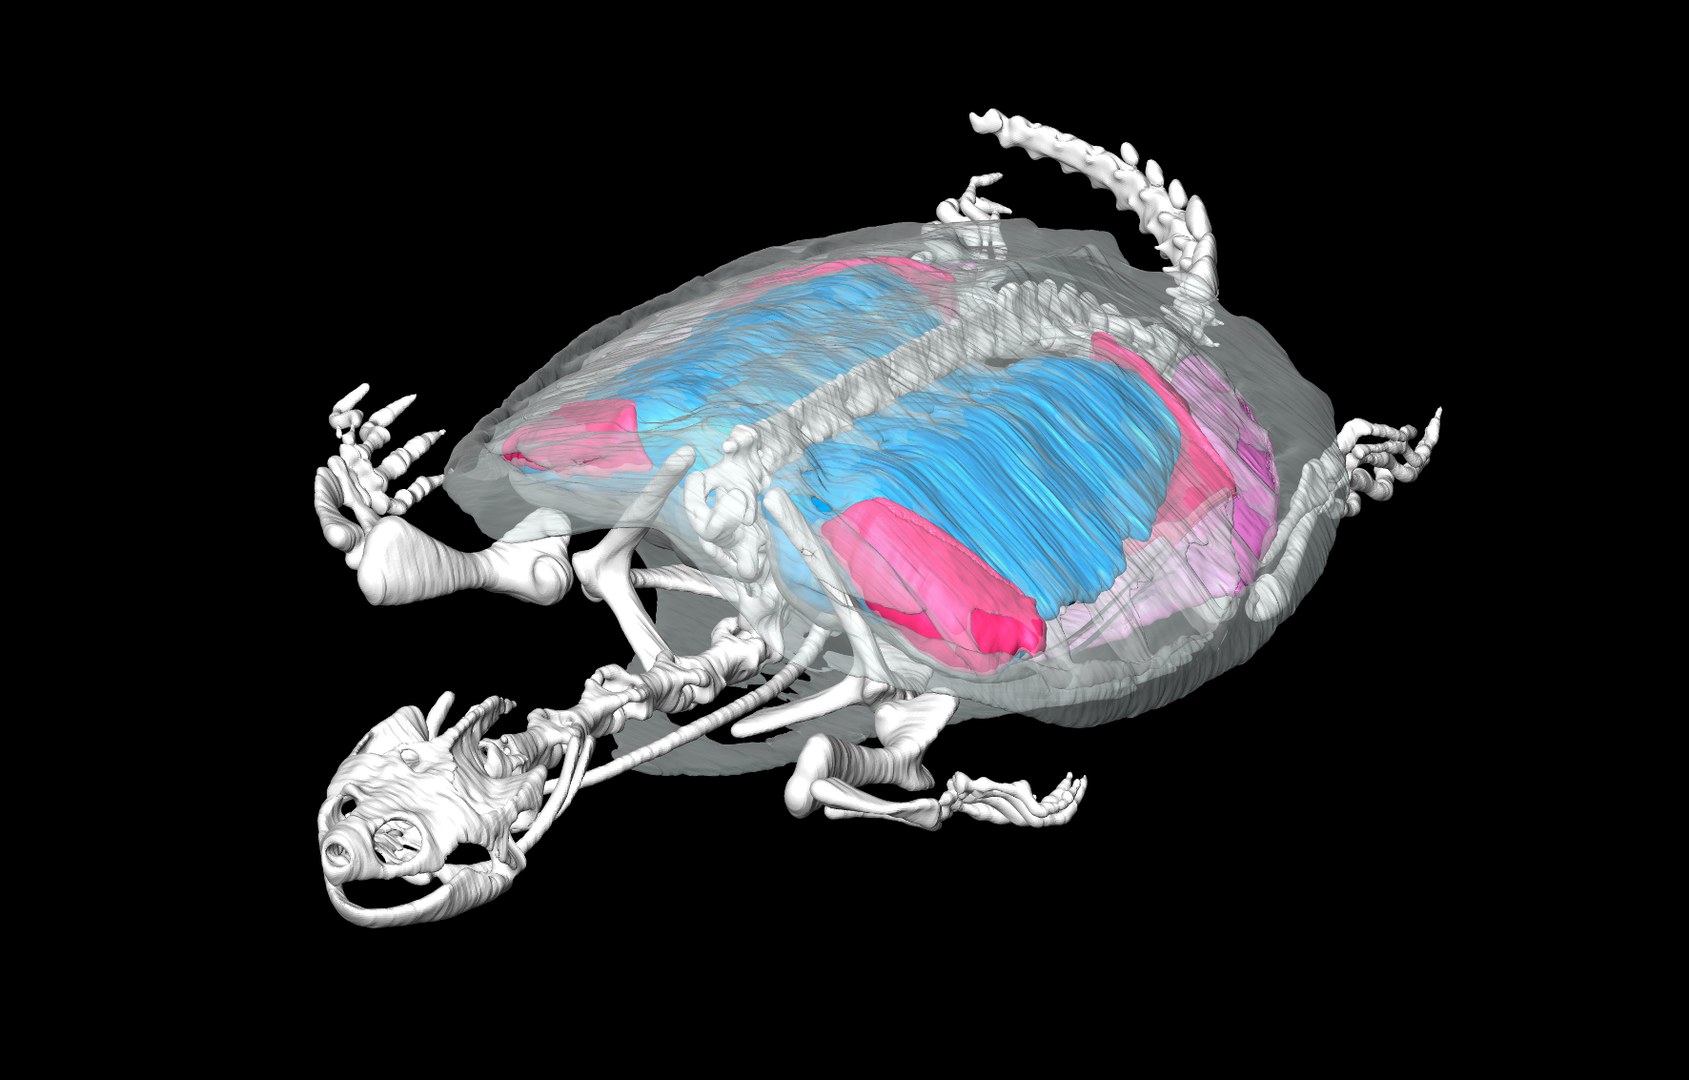 Computertomografie einer Amerikanischen Schnappschildkröte (Chelydra serpentina):